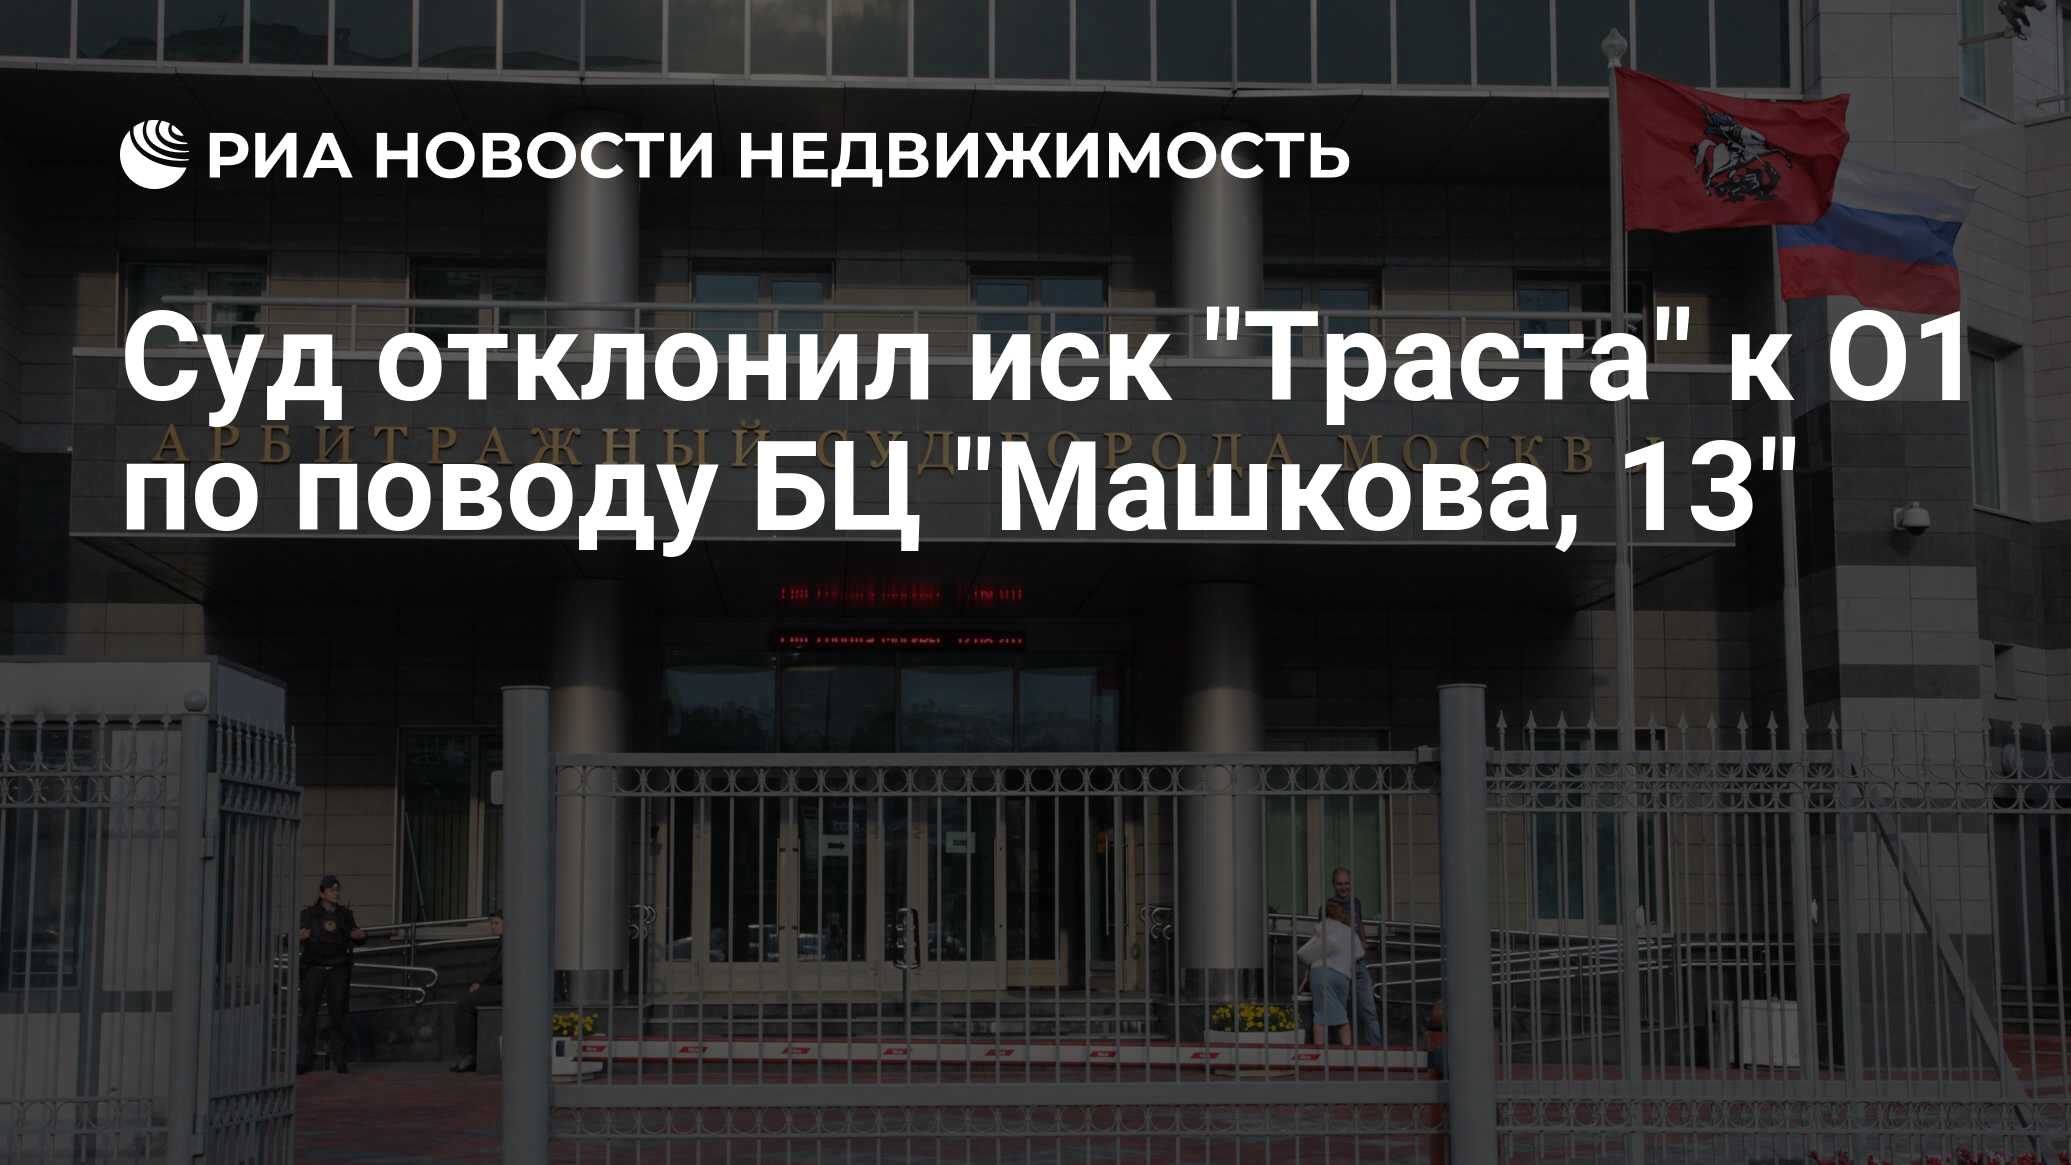 Иск в московский арбитражный суд